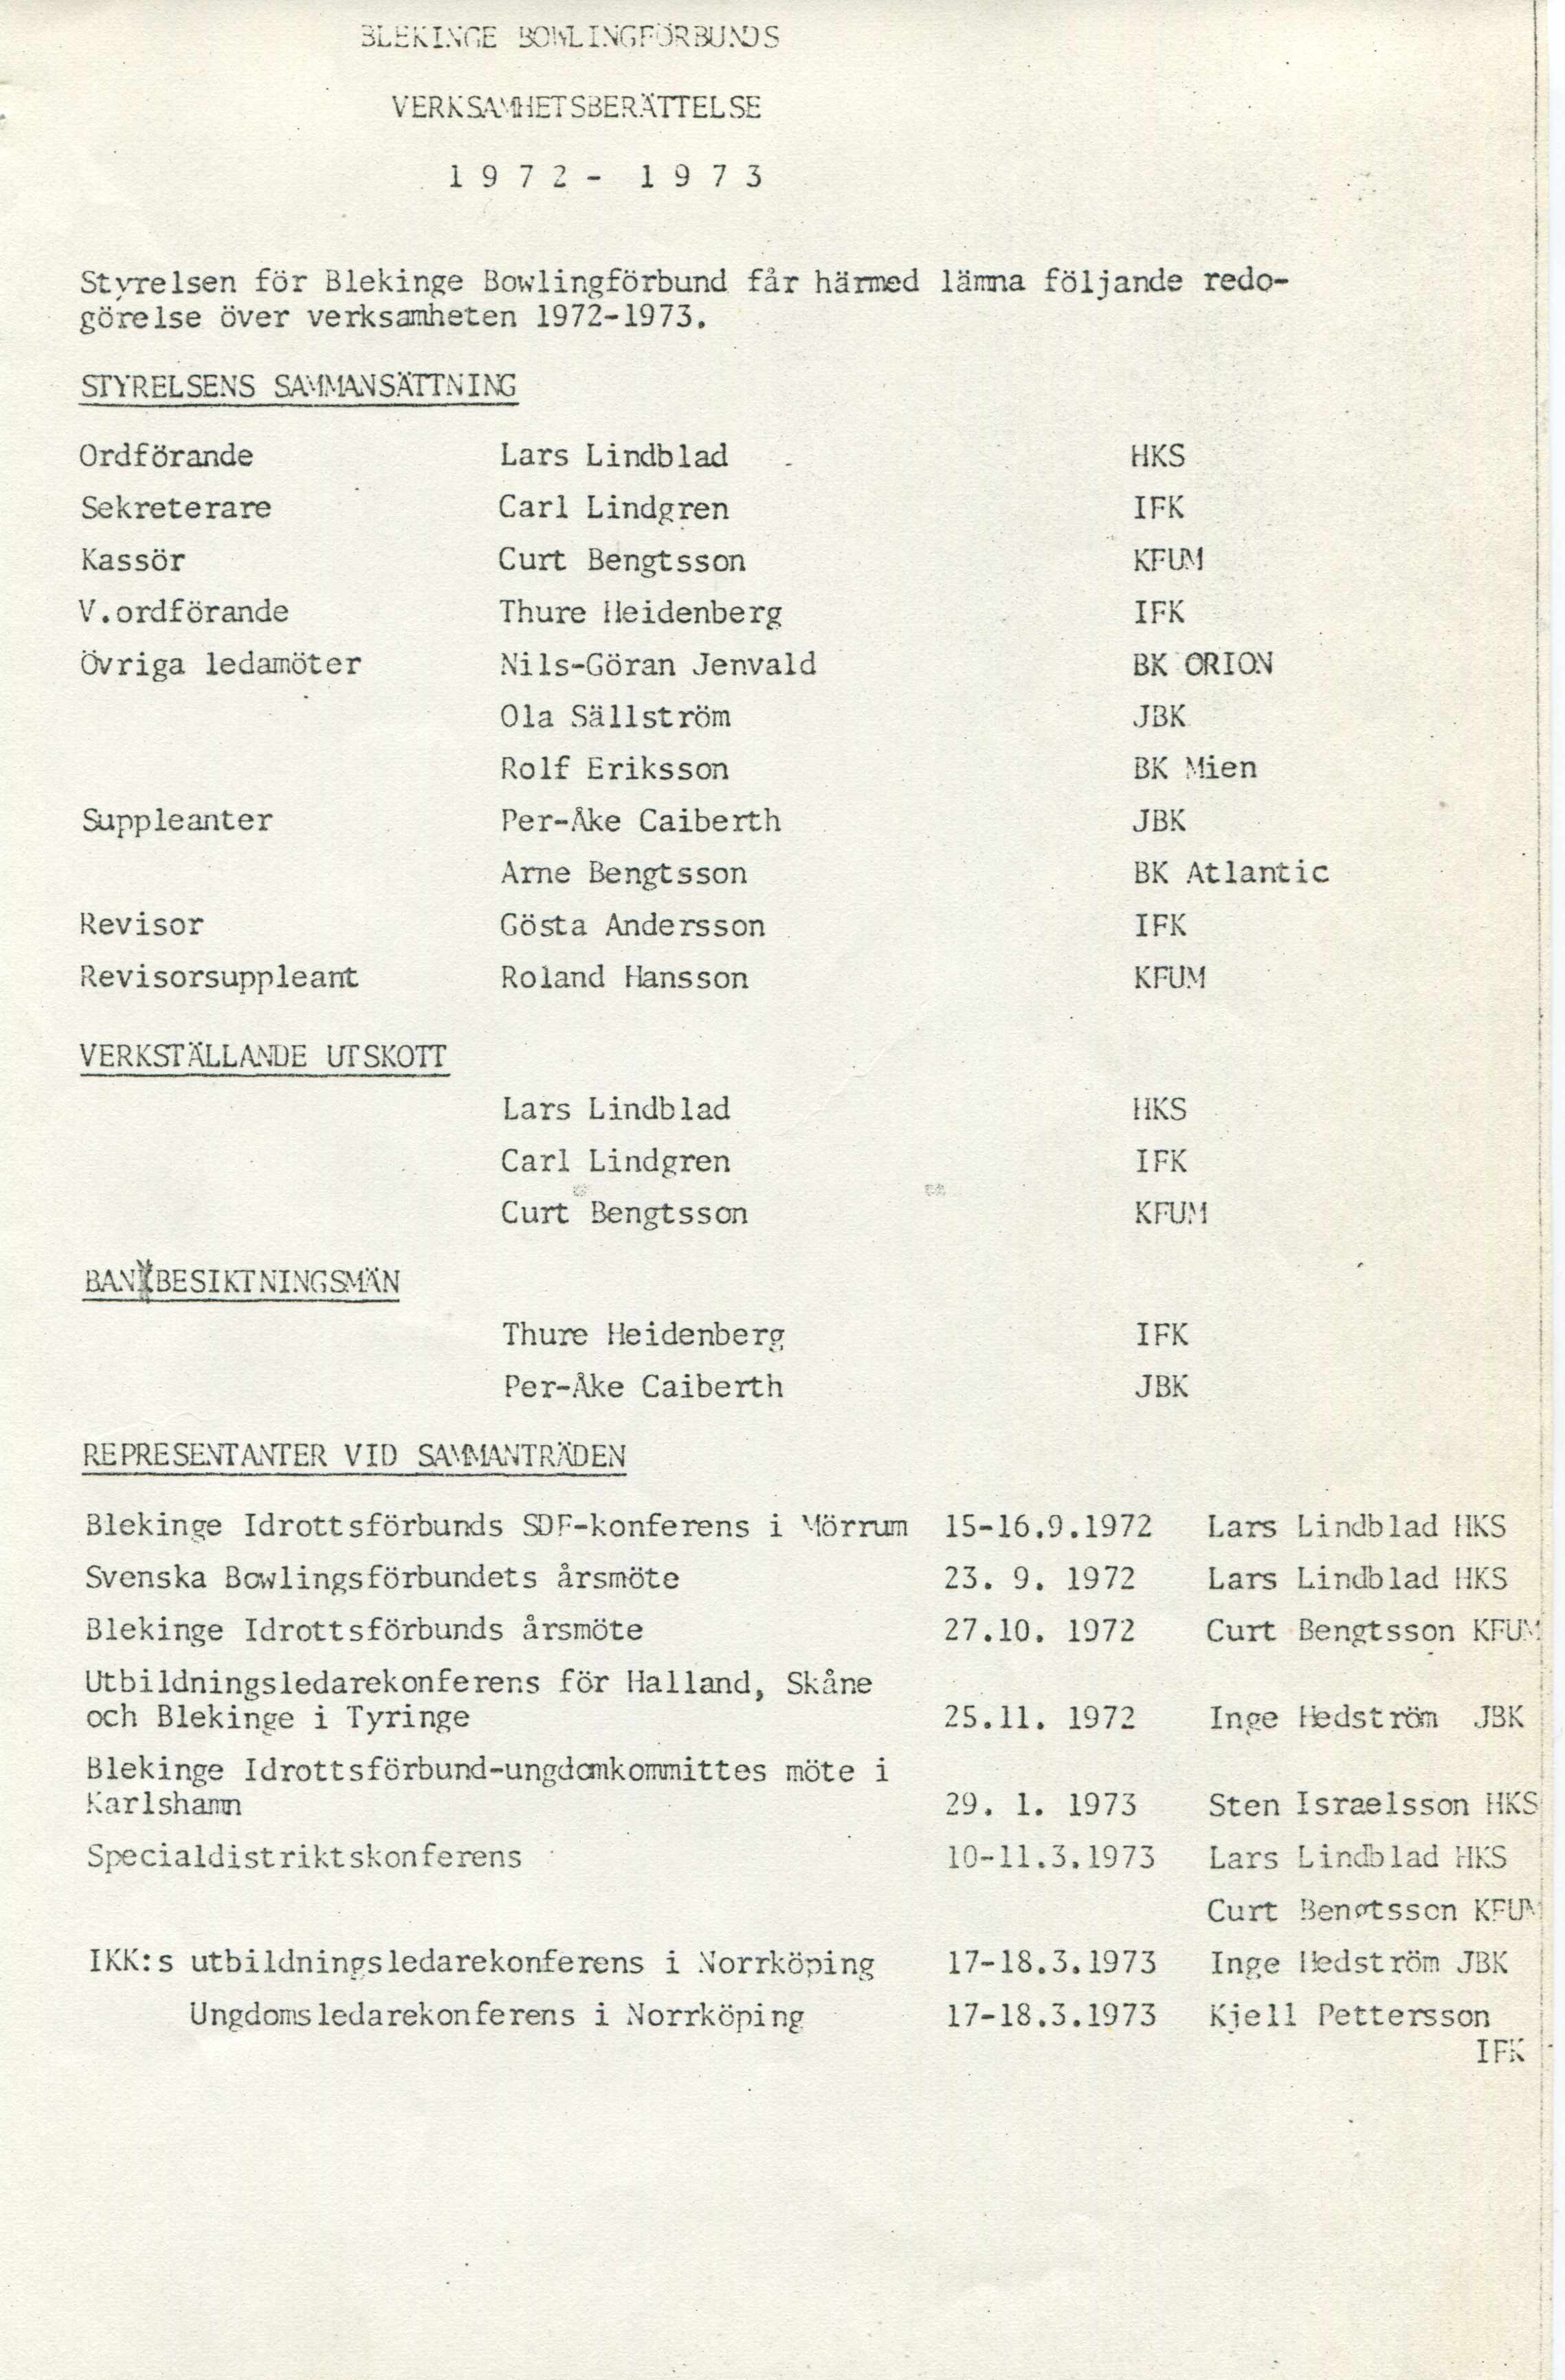 3LHK in ge bckl in g f o r bu s VERKSAMHET SBERÄTTEL SE 1 9 7 2-1 9 7 3 Styrelsen för Blekinge Bowlingförbund får härmed lämna följande redogörelse över verksamheten 1972-1973.